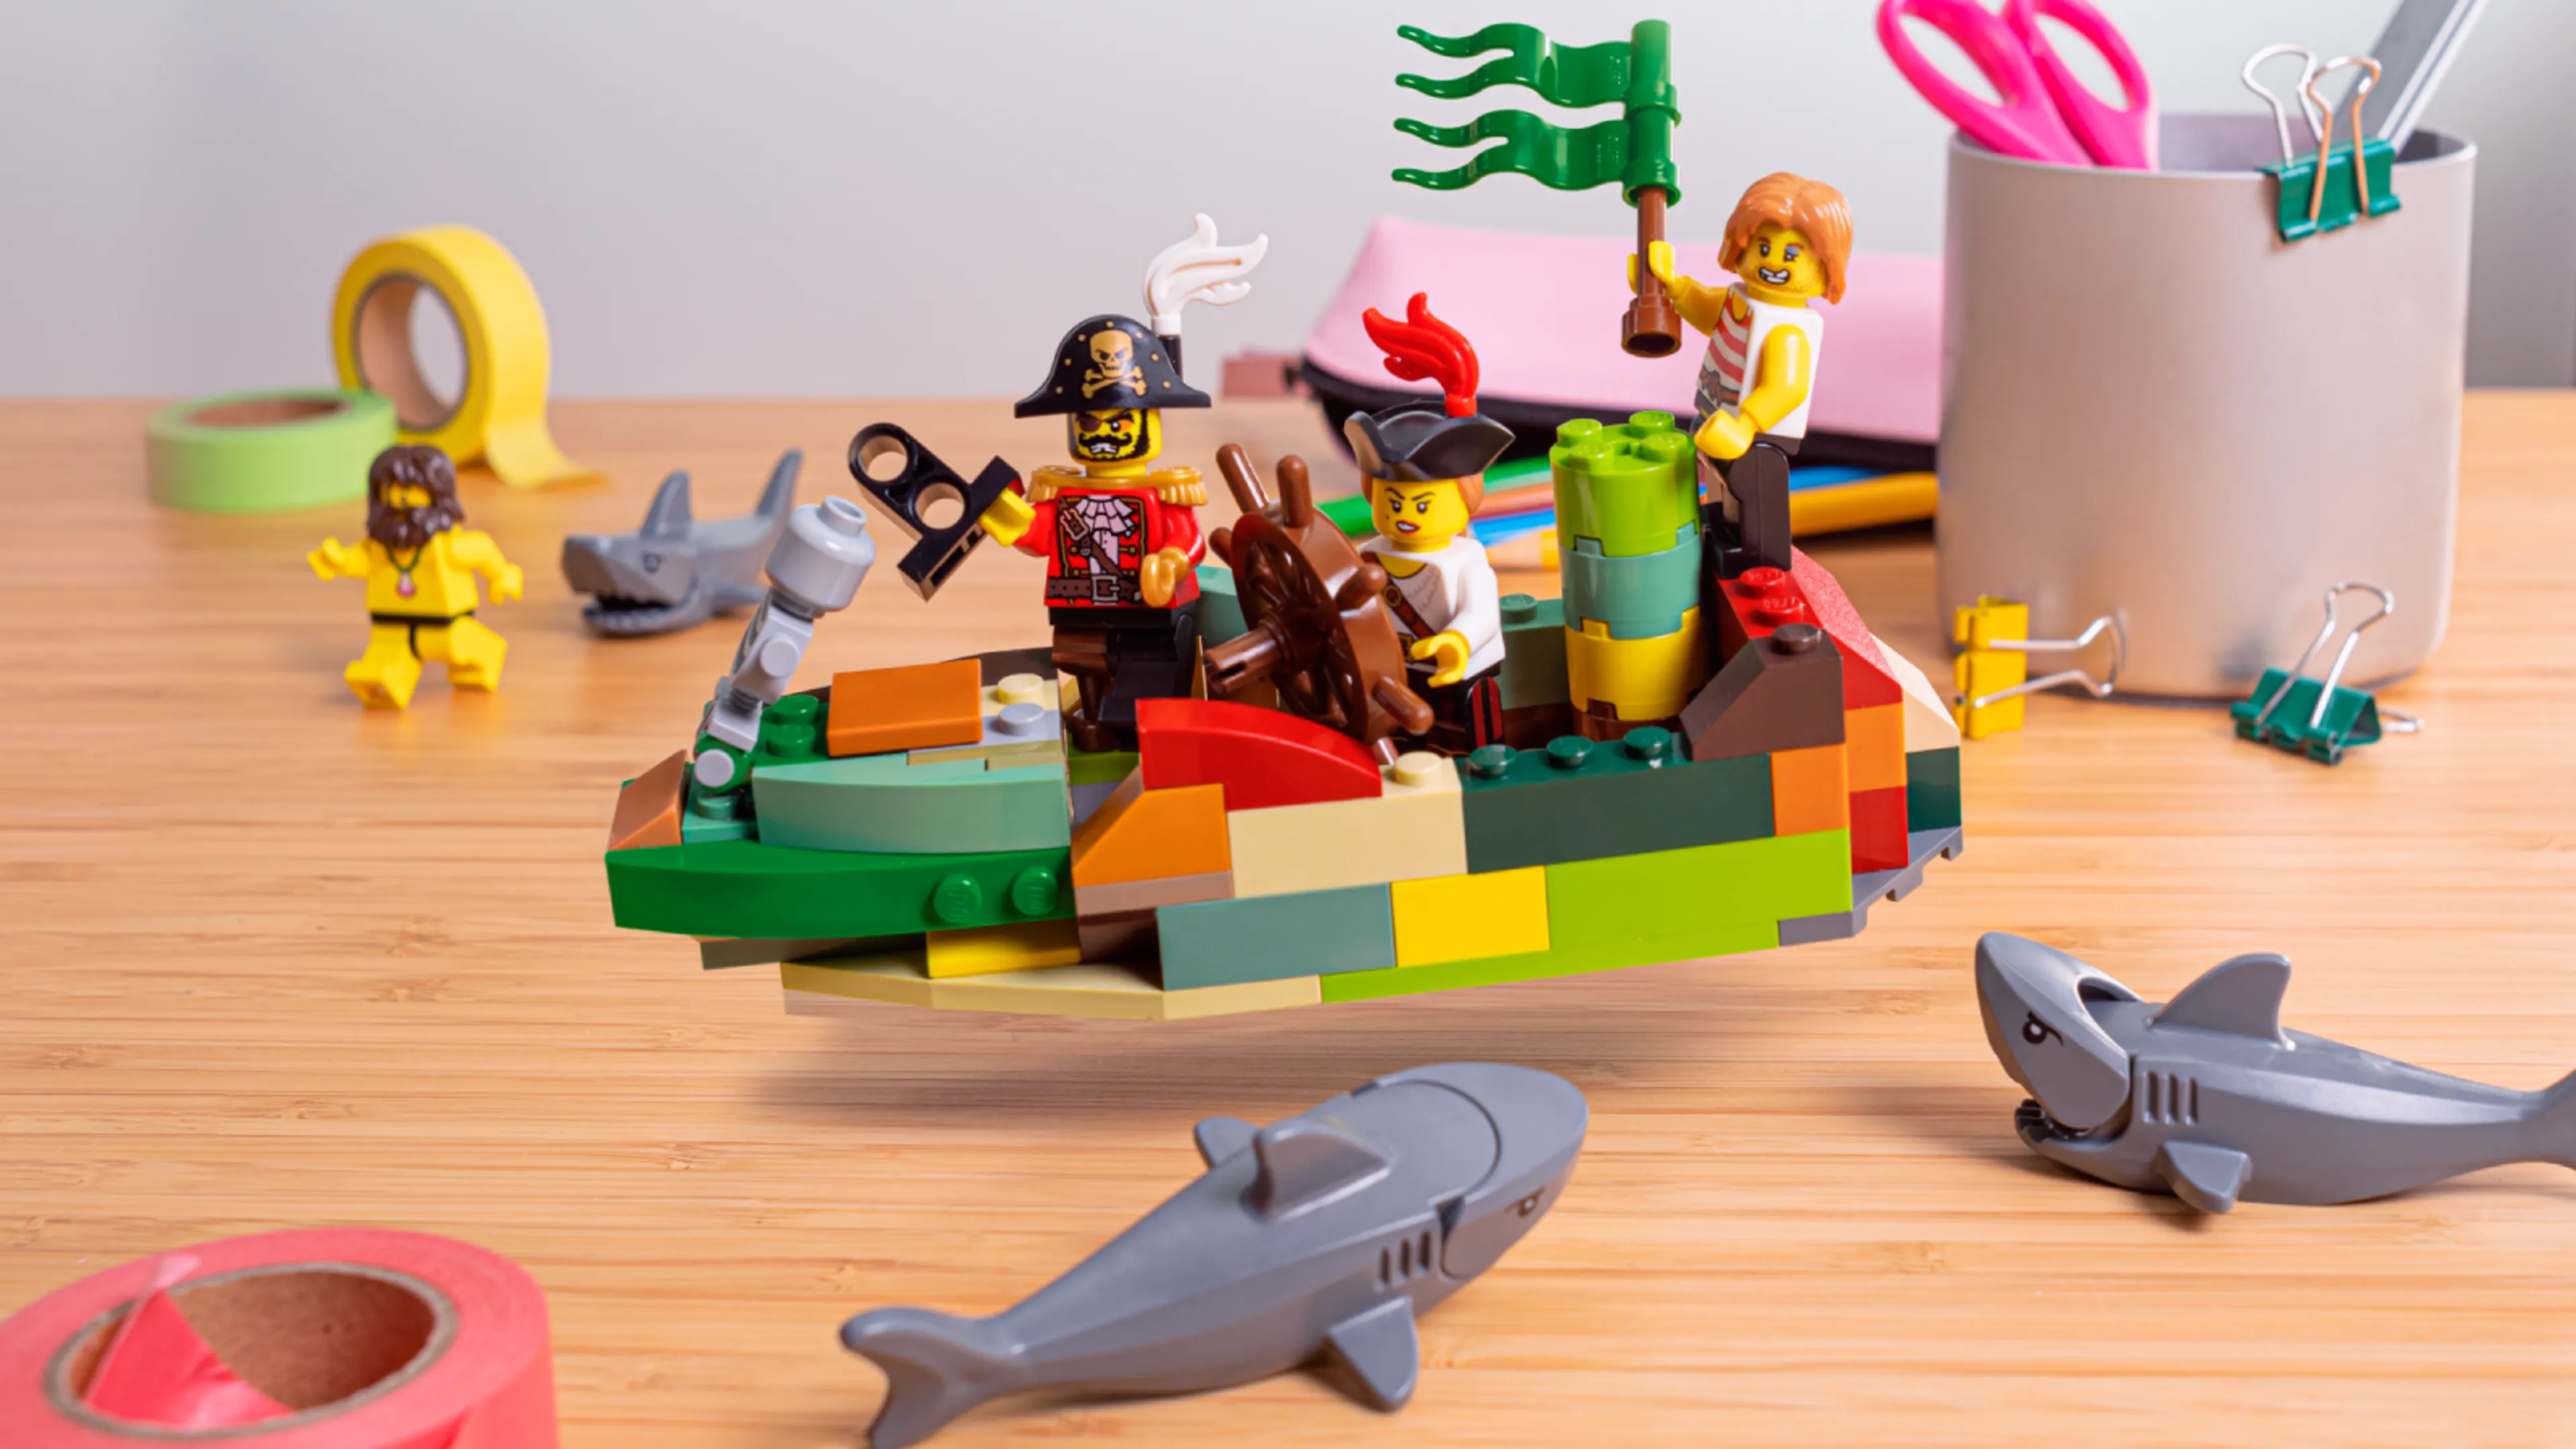 Minifiguren die het schip afmaken, omringd door haaien